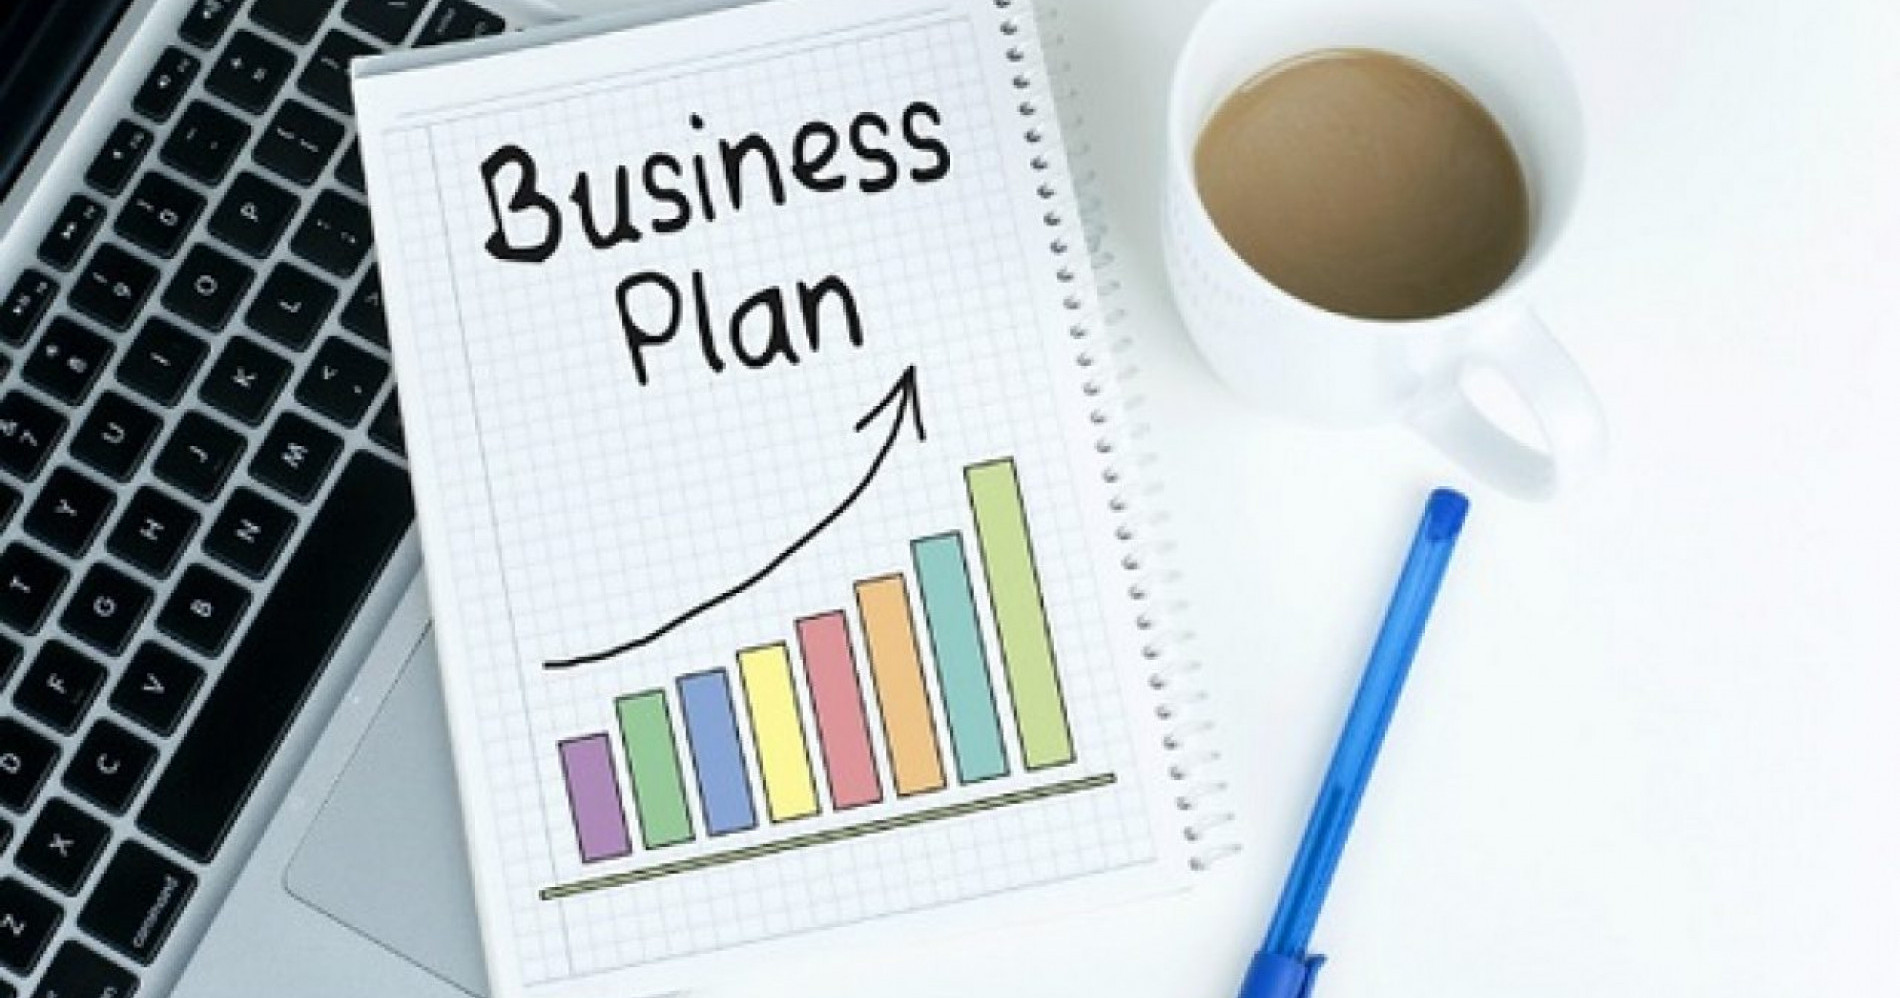 Business Plan adalah hal penting yang perlu diperhatikan pebisnis. Ketahui apa itu Business Plan dan mengapa penting! (Sumber: Vasiota.com)